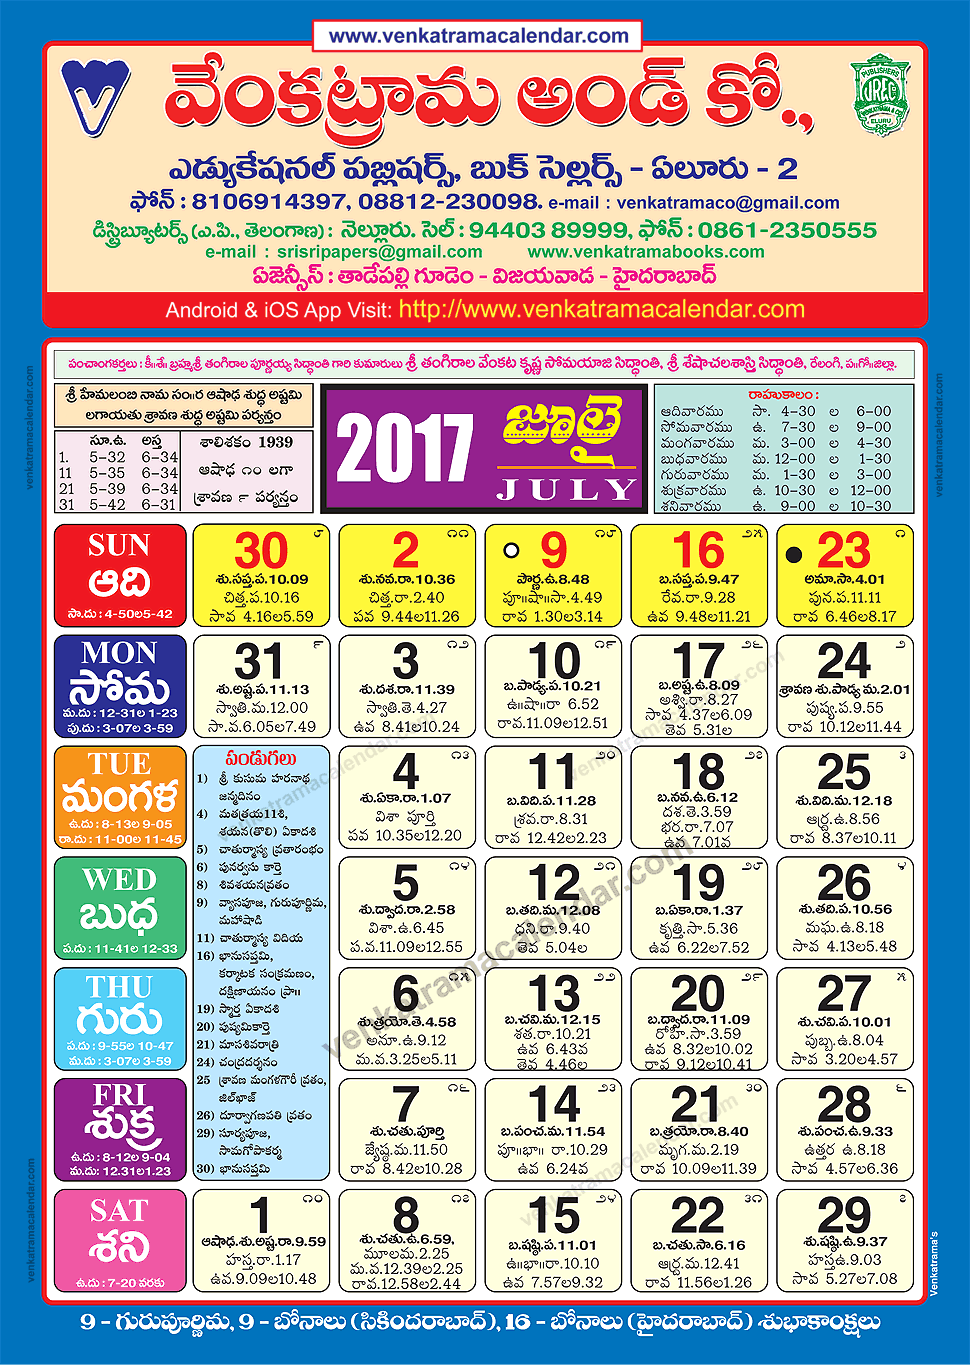 july-2017-venkatrama-co-colour-telugu-calendar-2017-festivals-holidays